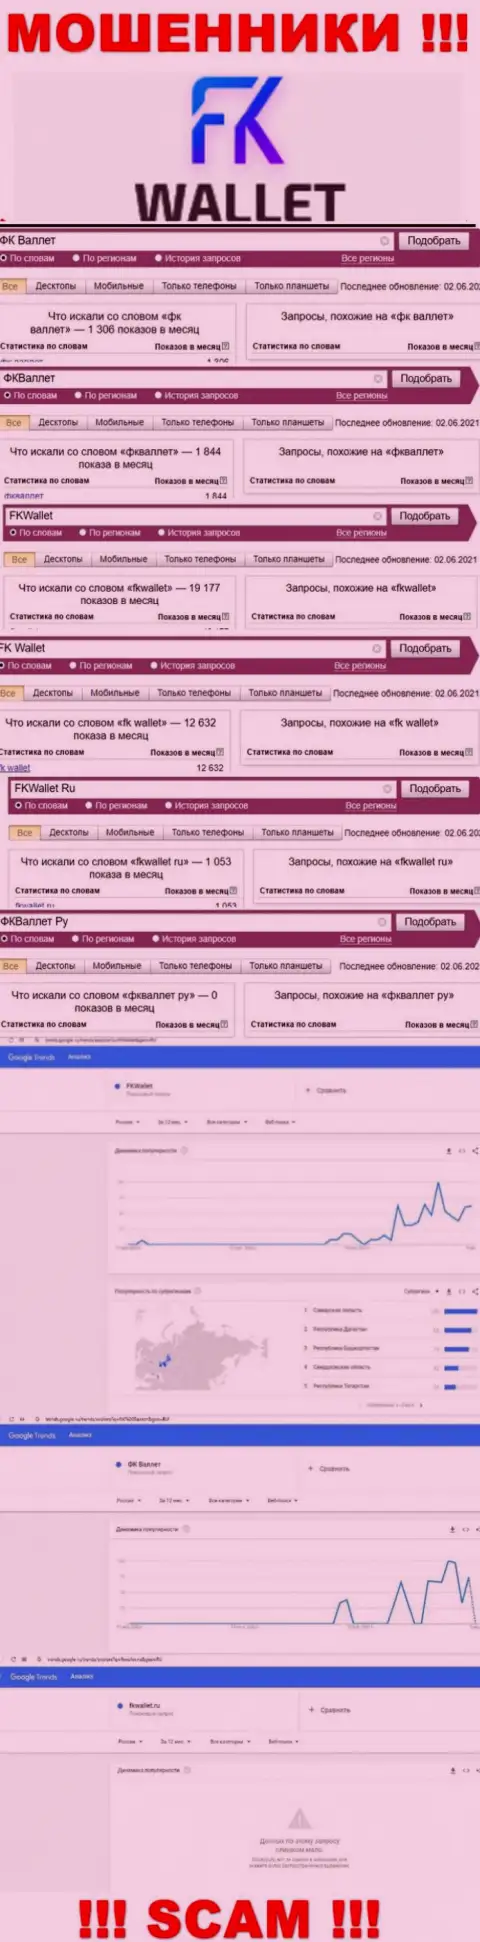 Скрин статистики онлайн-запросов по незаконно действующей конторе ФК Валлет